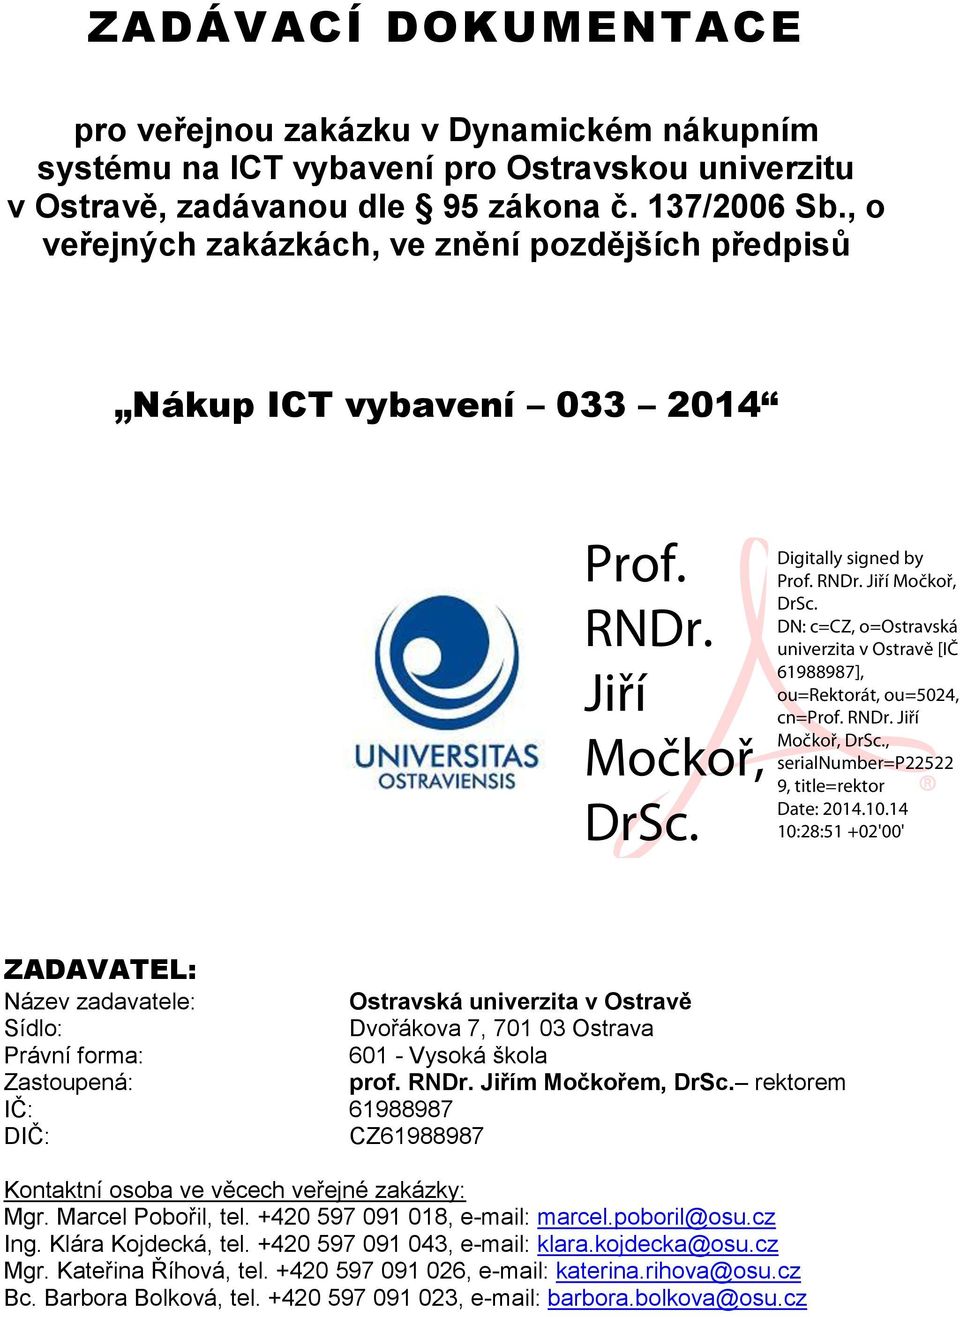 Digitally signed by Prof. RNDr. Jiří Močkoř, DrSc. DN: c=cz, o=ostravská univerzita v Ostravě [IČ 61988987], ou=rektorát, ou=5024, cn=prof. RNDr. Jiří Močkoř, DrSc., serialnumber=p22522 9, title=rektor Date: 2014.